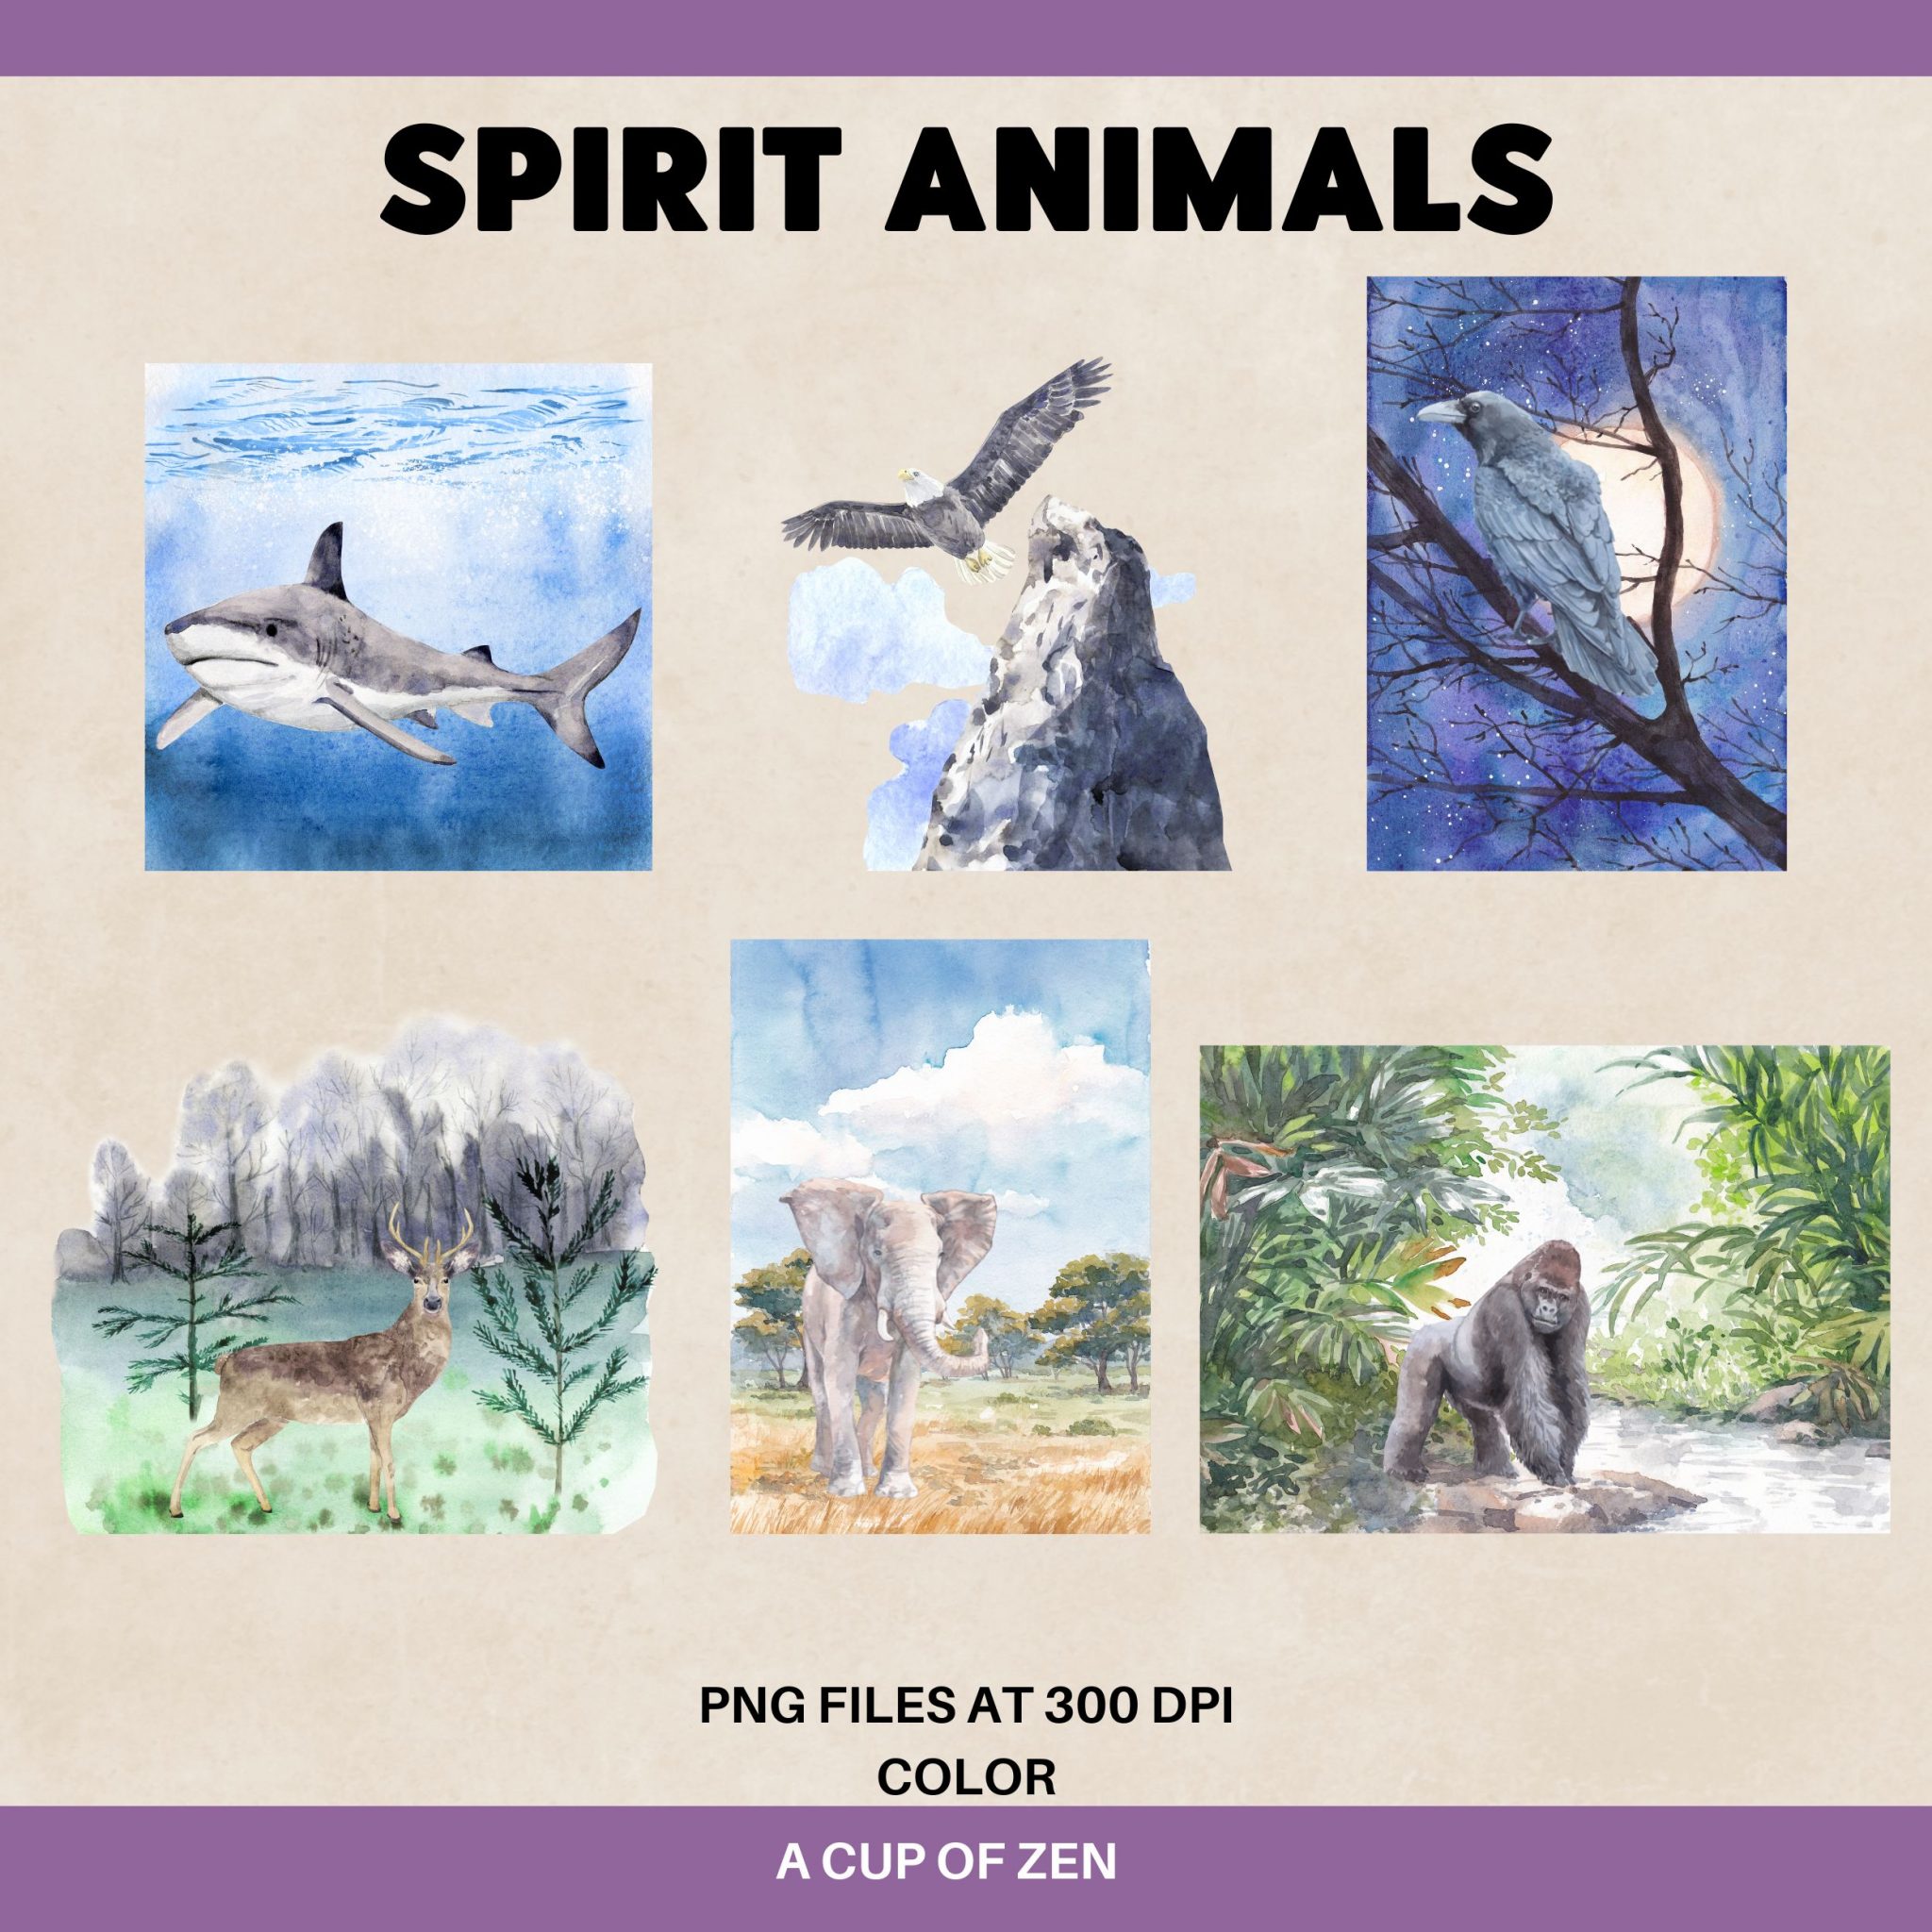 SPIRIT ANIMALS